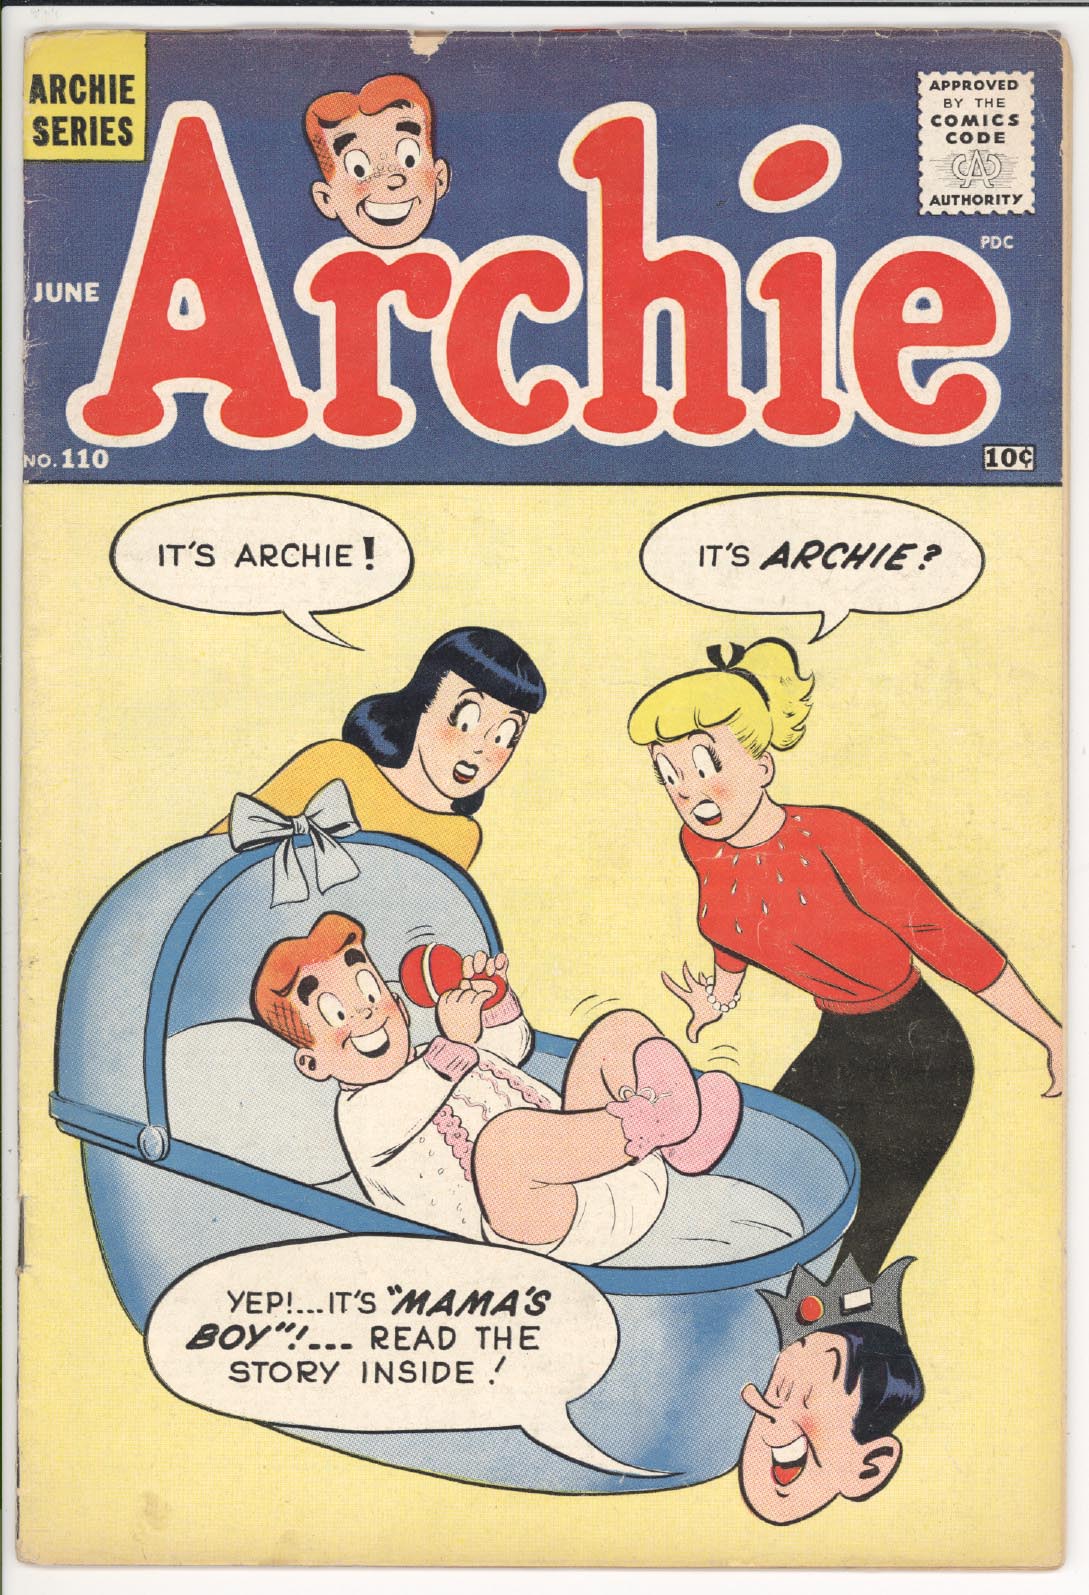 Archie comics #110